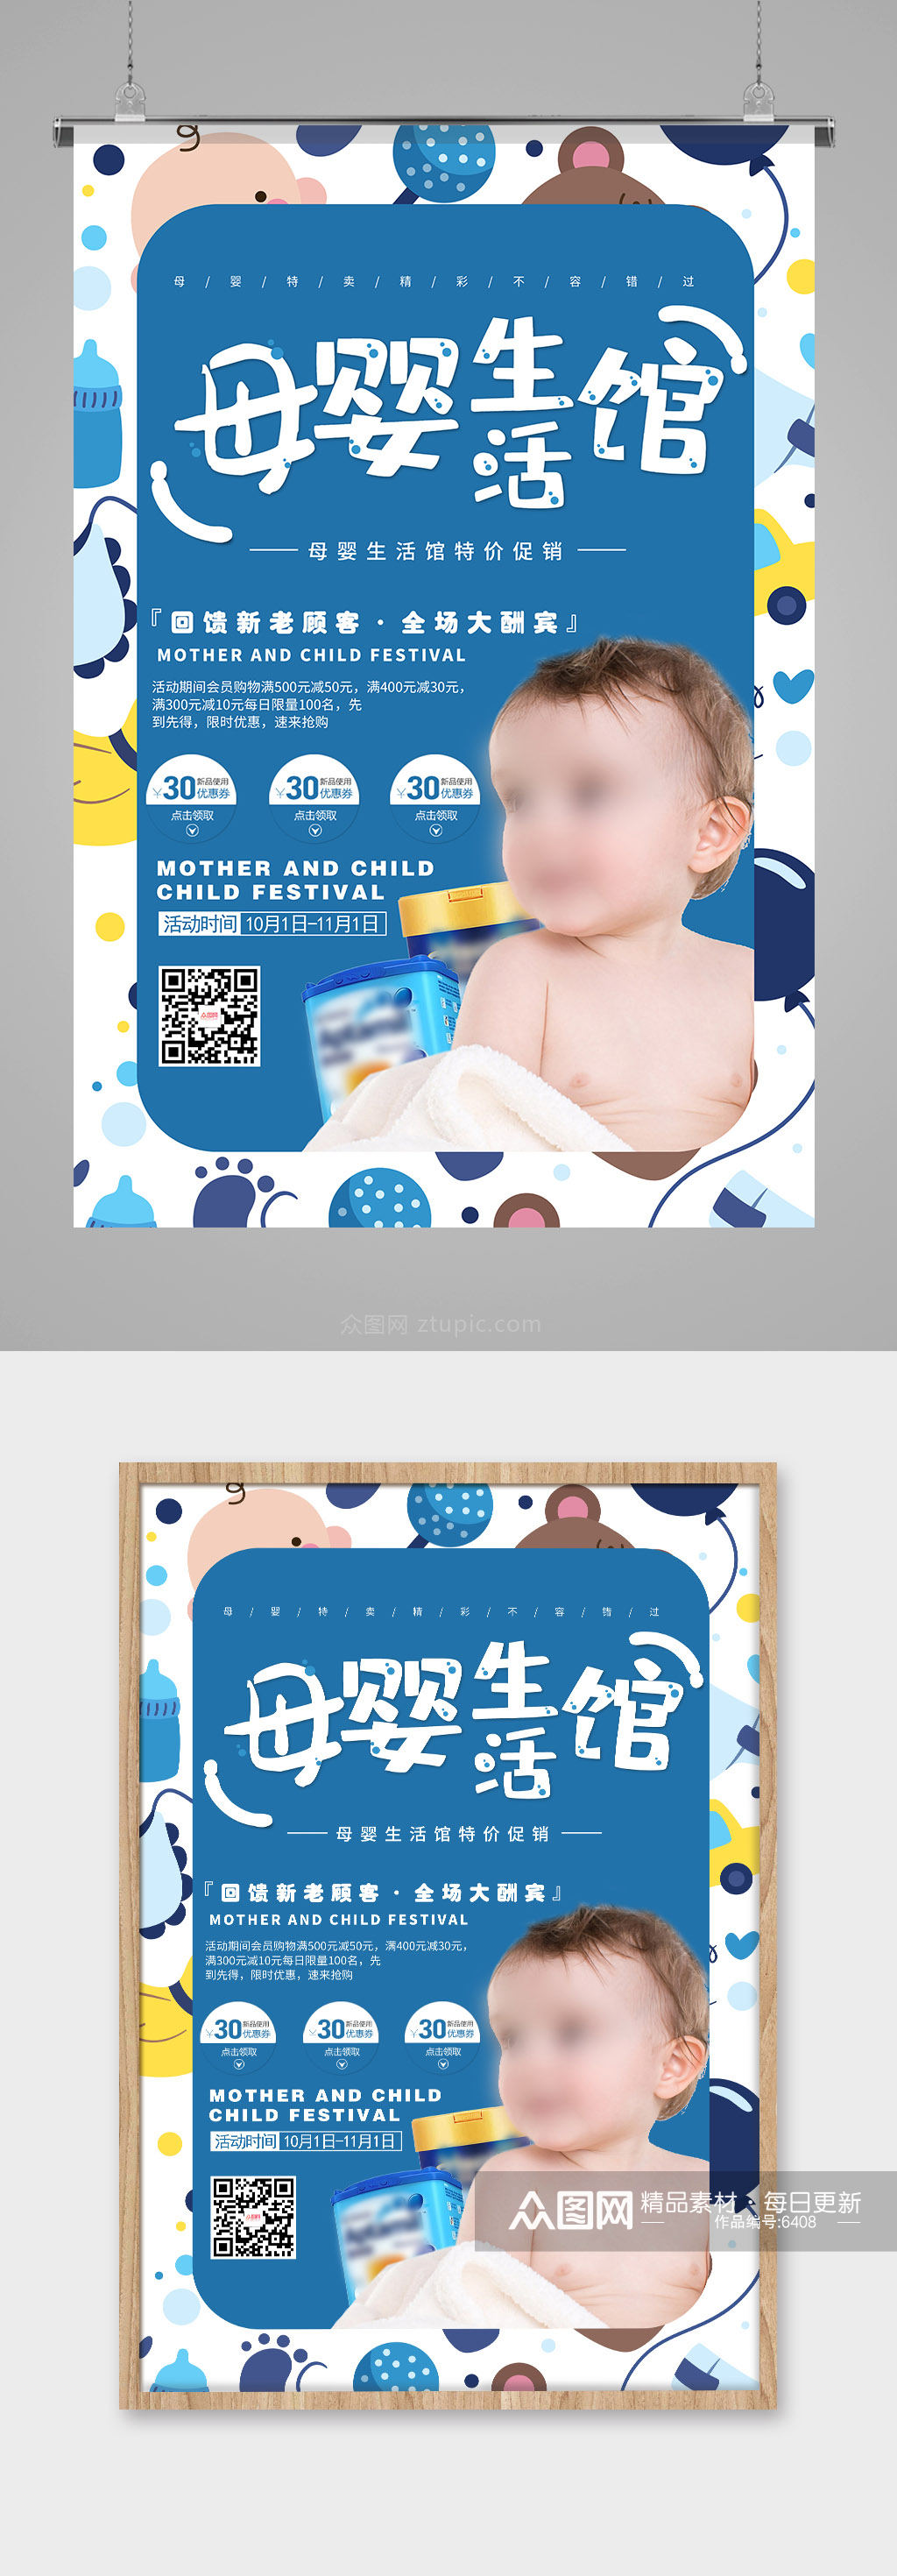 蓝色卡通底纹母婴生活馆母婴用品海报素材